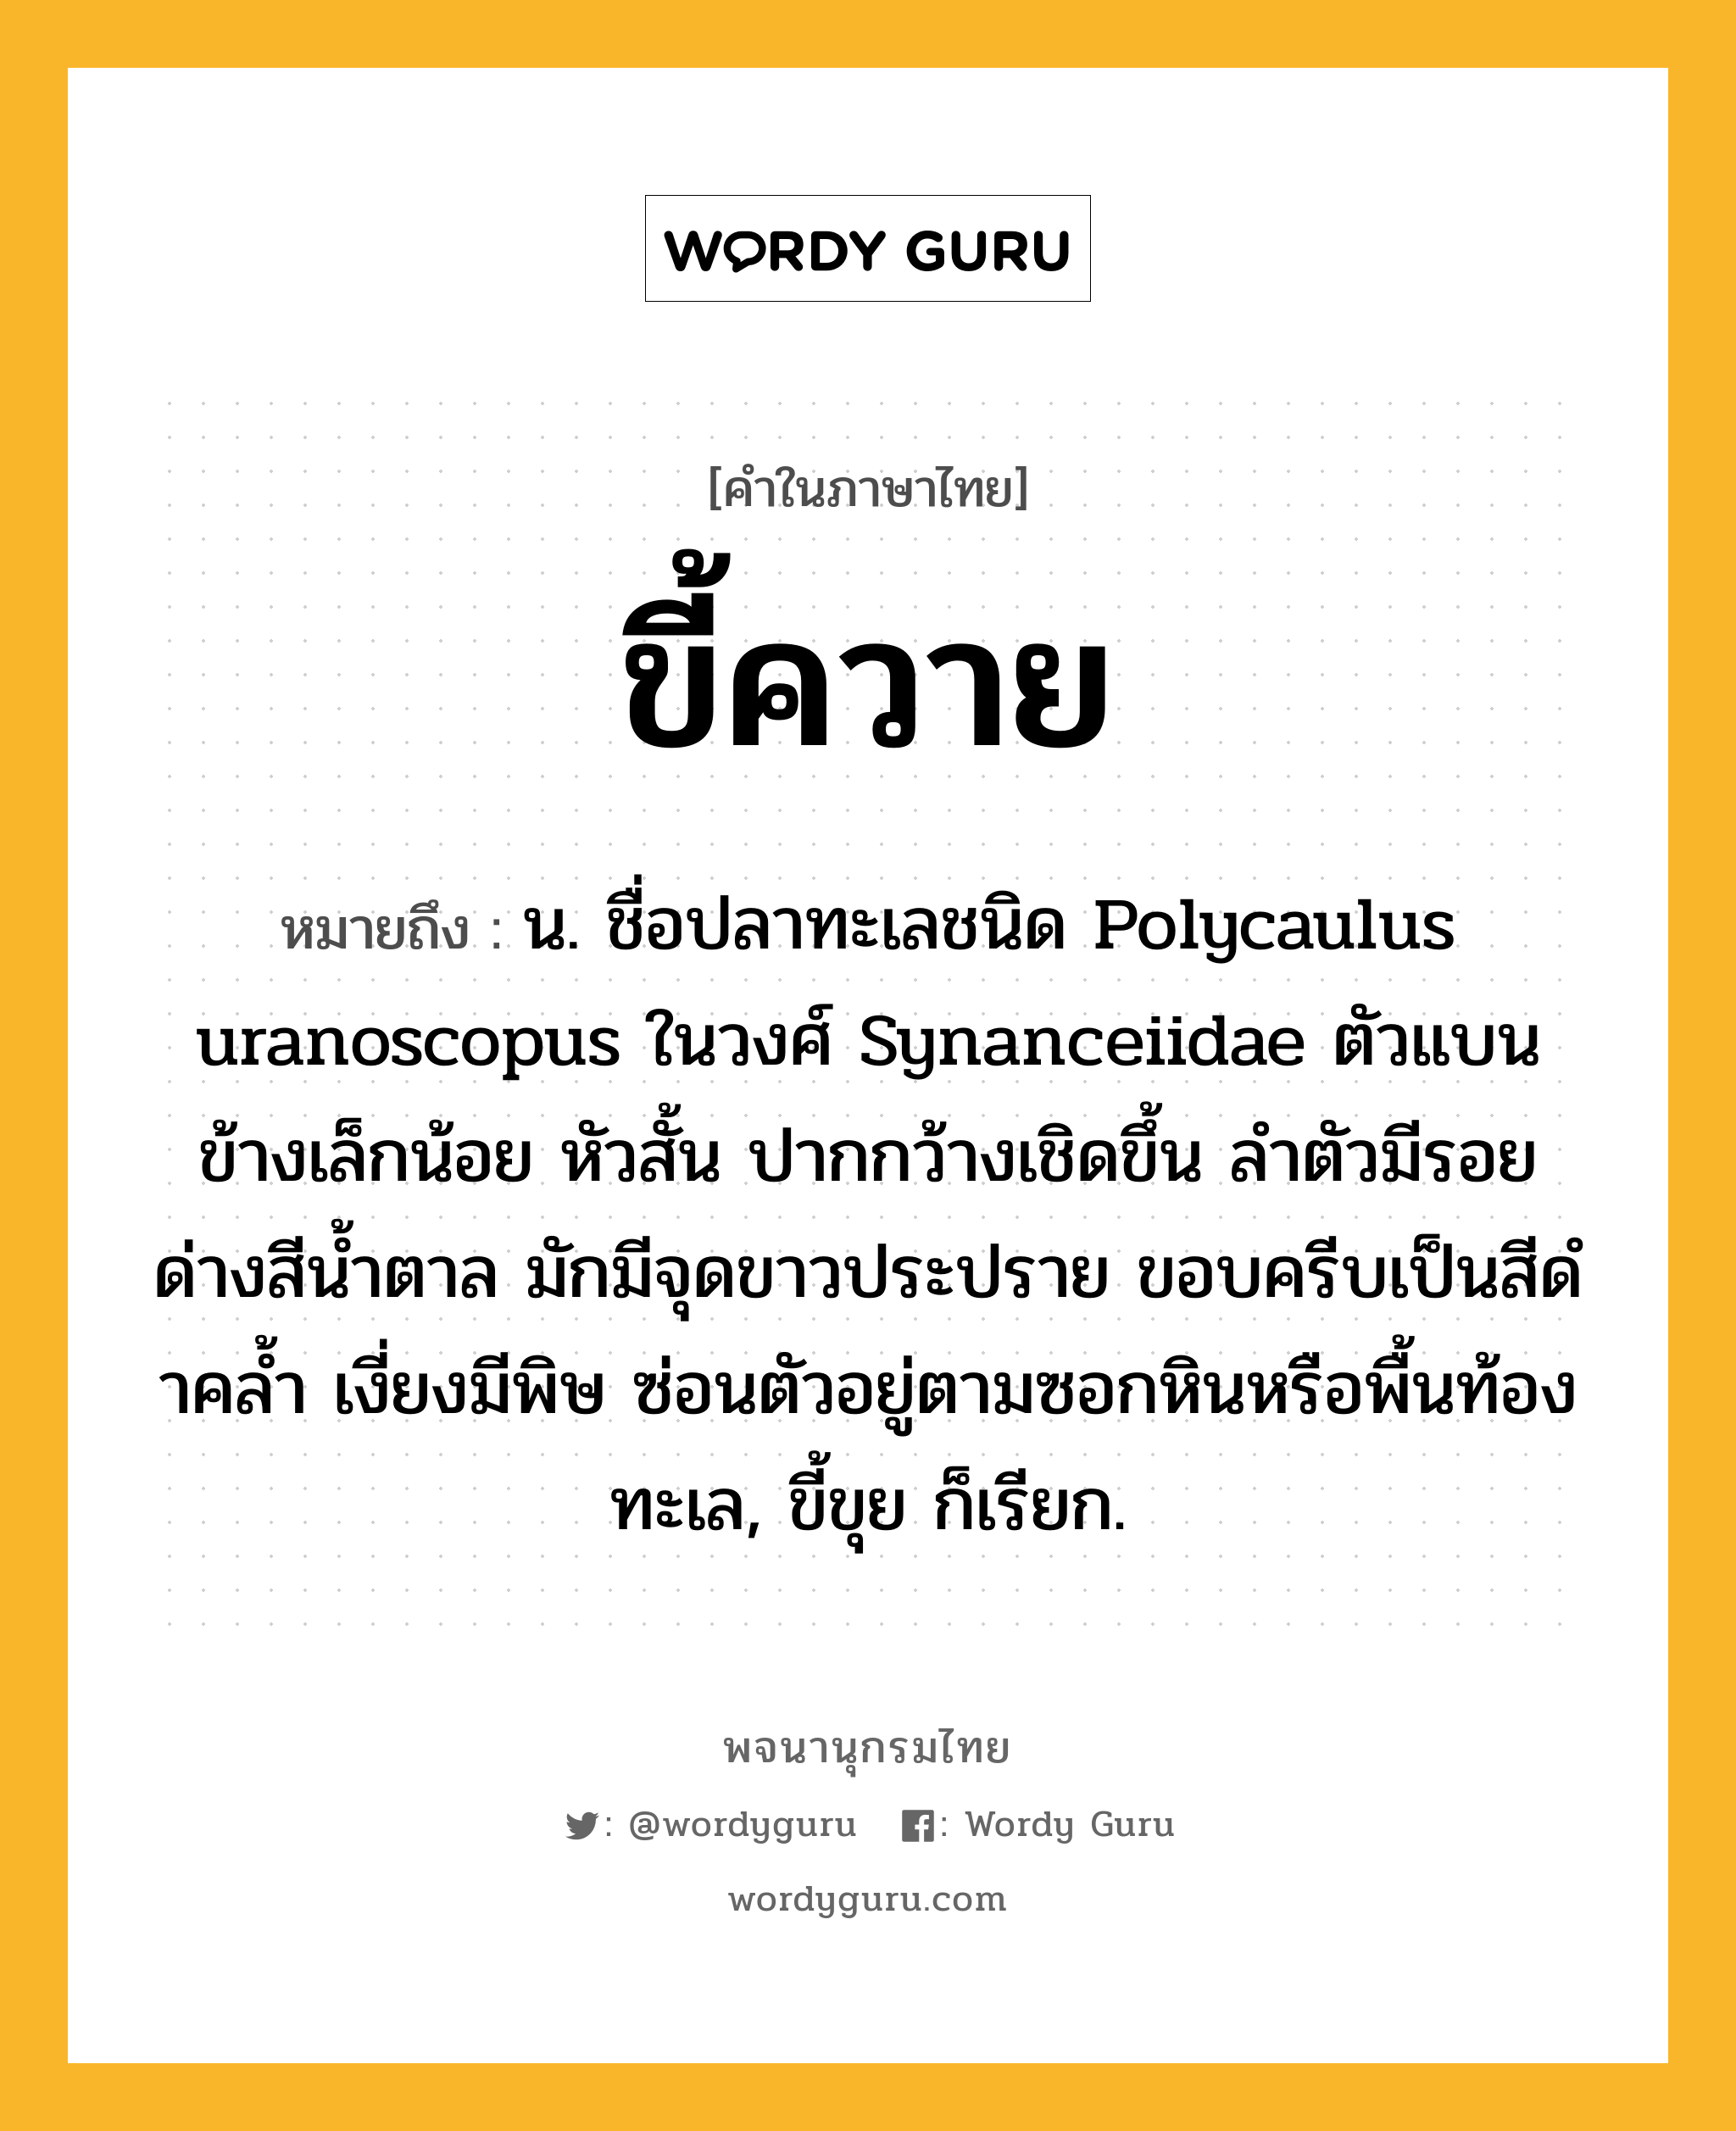 ขี้ควาย หมายถึงอะไร?, คำในภาษาไทย ขี้ควาย หมายถึง น. ชื่อปลาทะเลชนิด Polycaulus uranoscopus ในวงศ์ Synanceiidae ตัวแบนข้างเล็กน้อย หัวสั้น ปากกว้างเชิดขึ้น ลําตัวมีรอยด่างสีนํ้าตาล มักมีจุดขาวประปราย ขอบครีบเป็นสีดําคลํ้า เงี่ยงมีพิษ ซ่อนตัวอยู่ตามซอกหินหรือพื้นท้องทะเล, ขี้ขุย ก็เรียก.